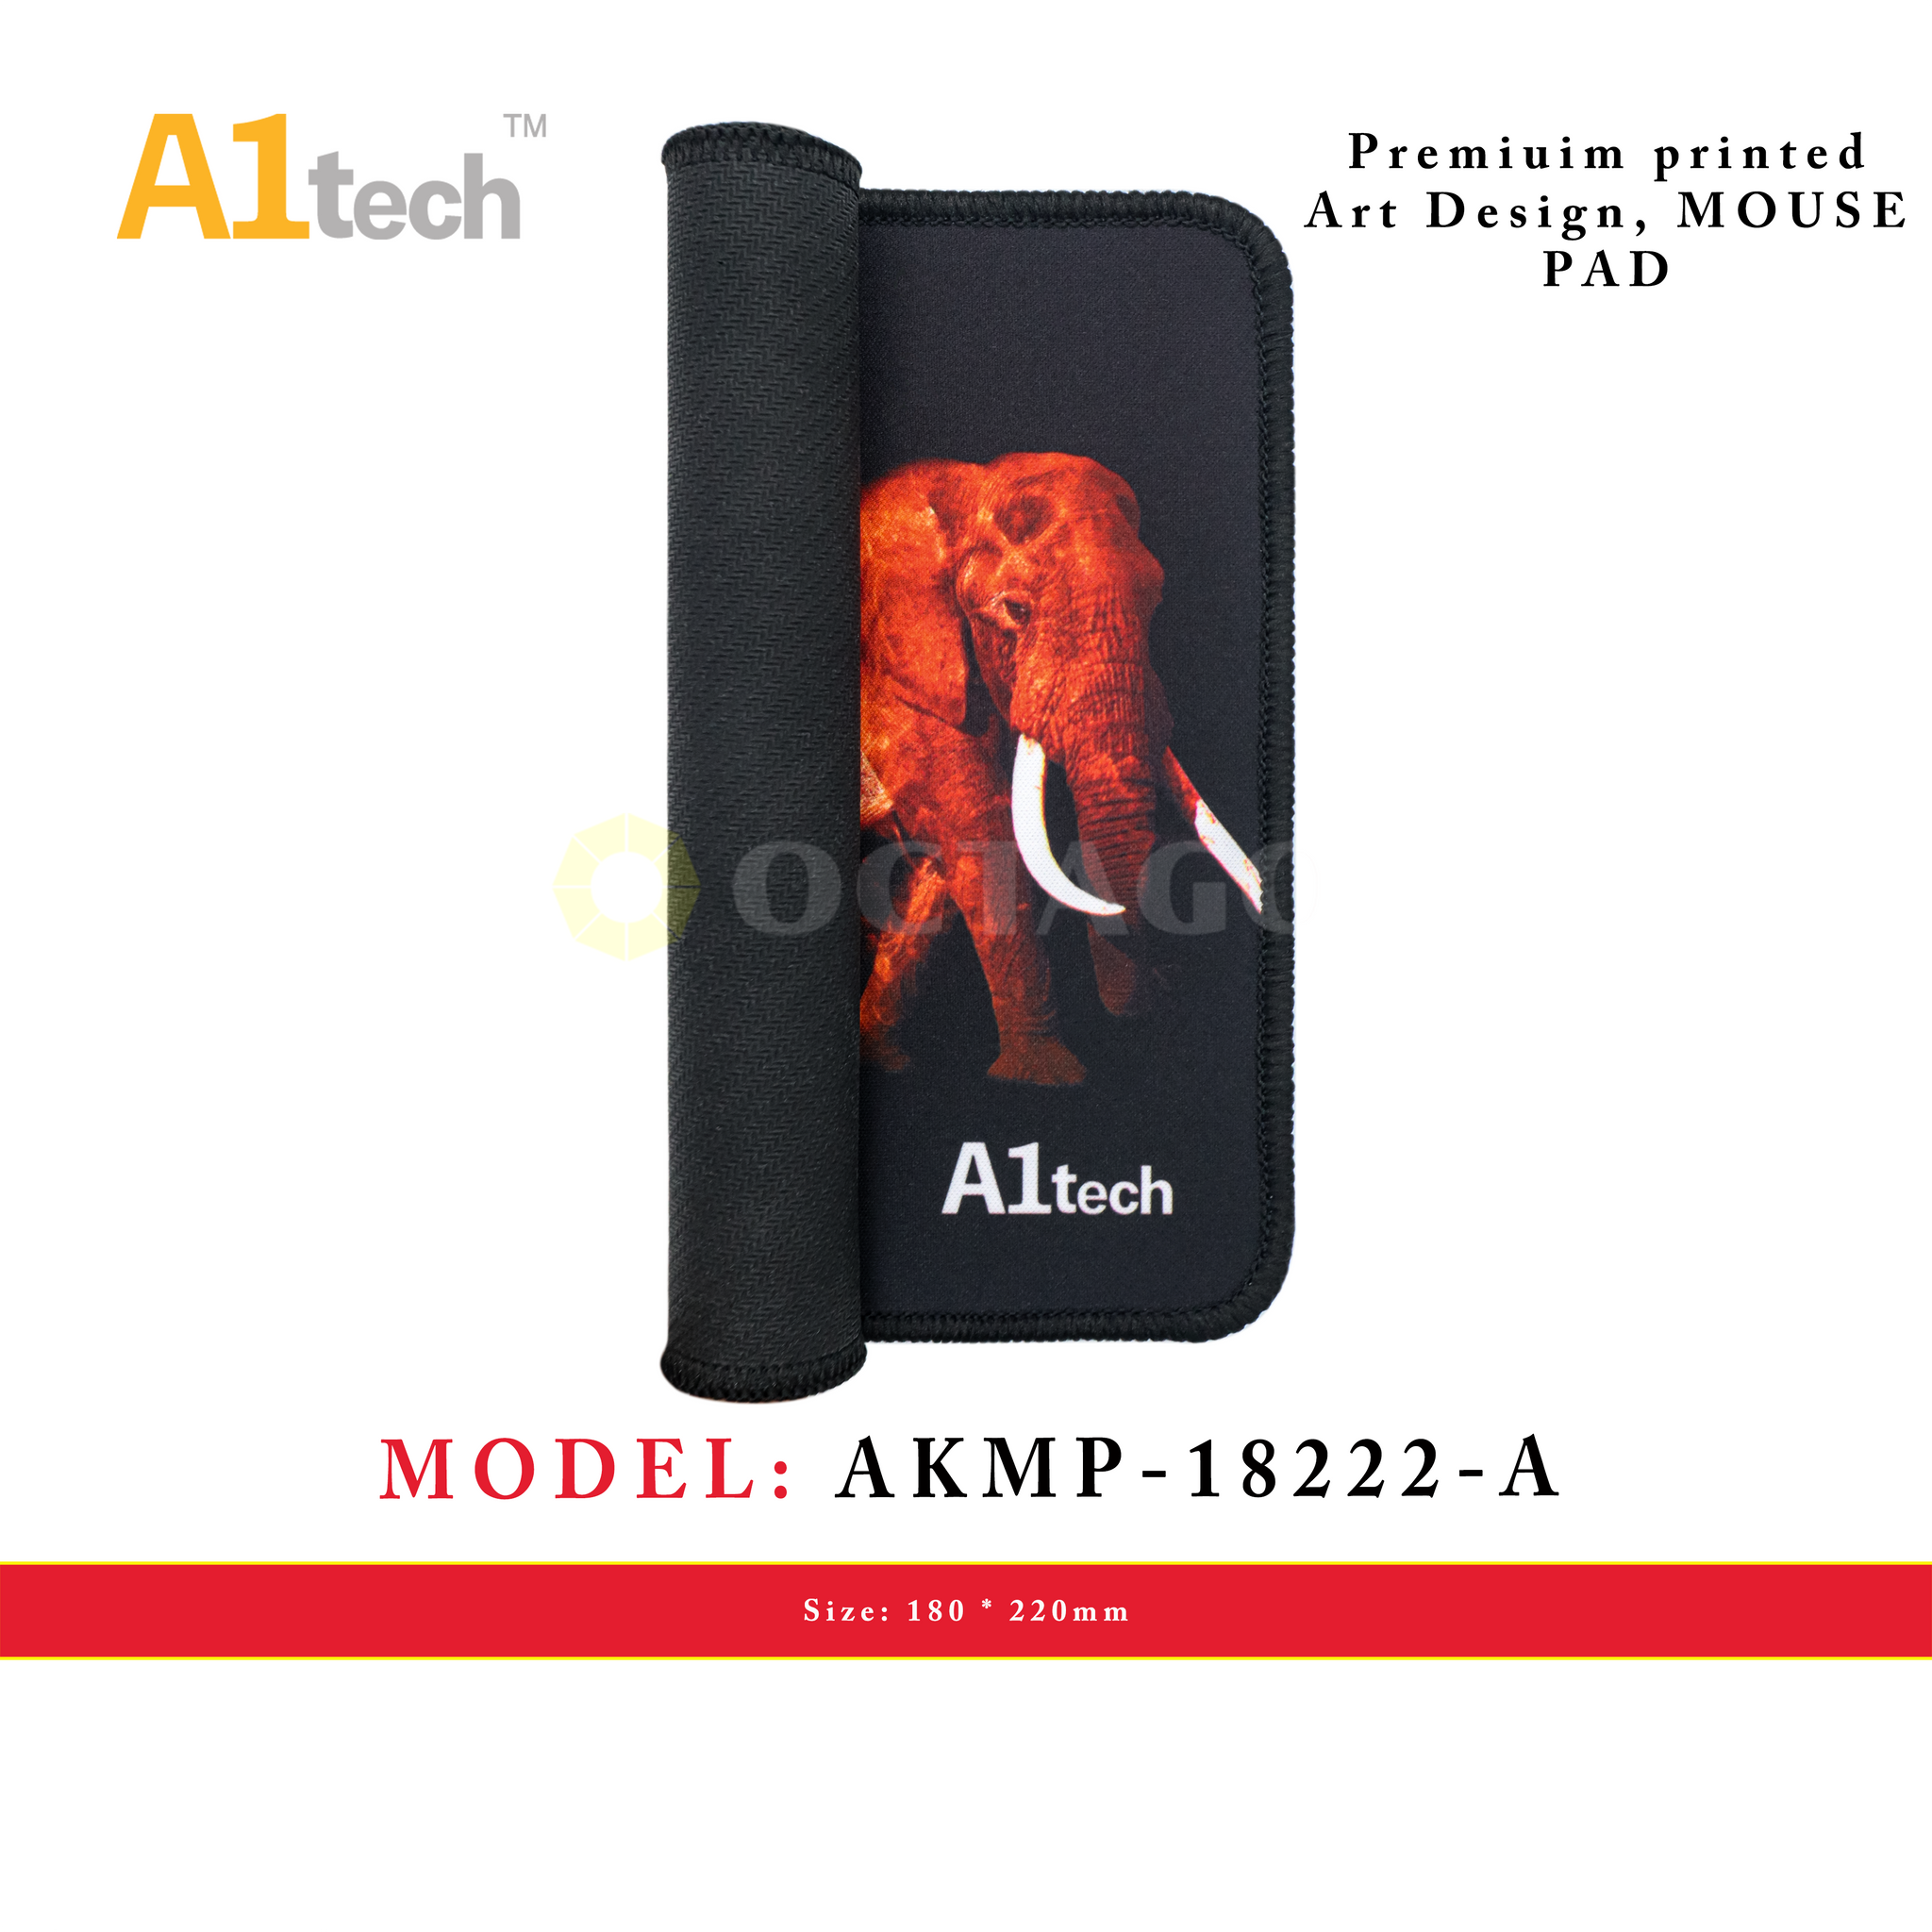 A1TECH AKMP-18222-A MOUSE PAD